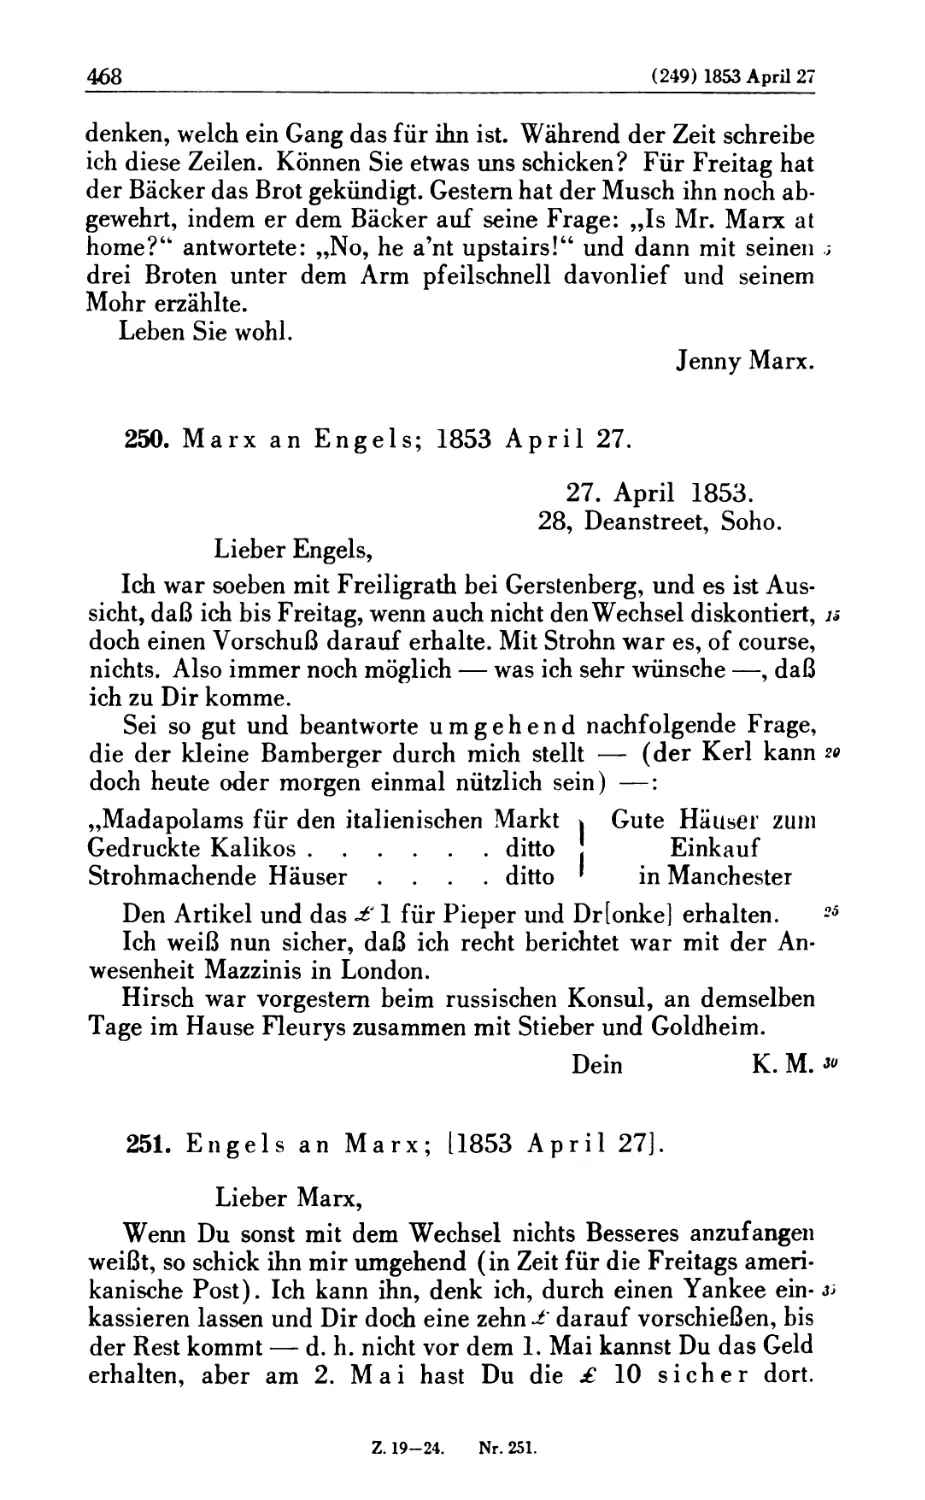 250. Marx an Engels; 1853 April 27
251. Engels an Marx; [1853 April 27]